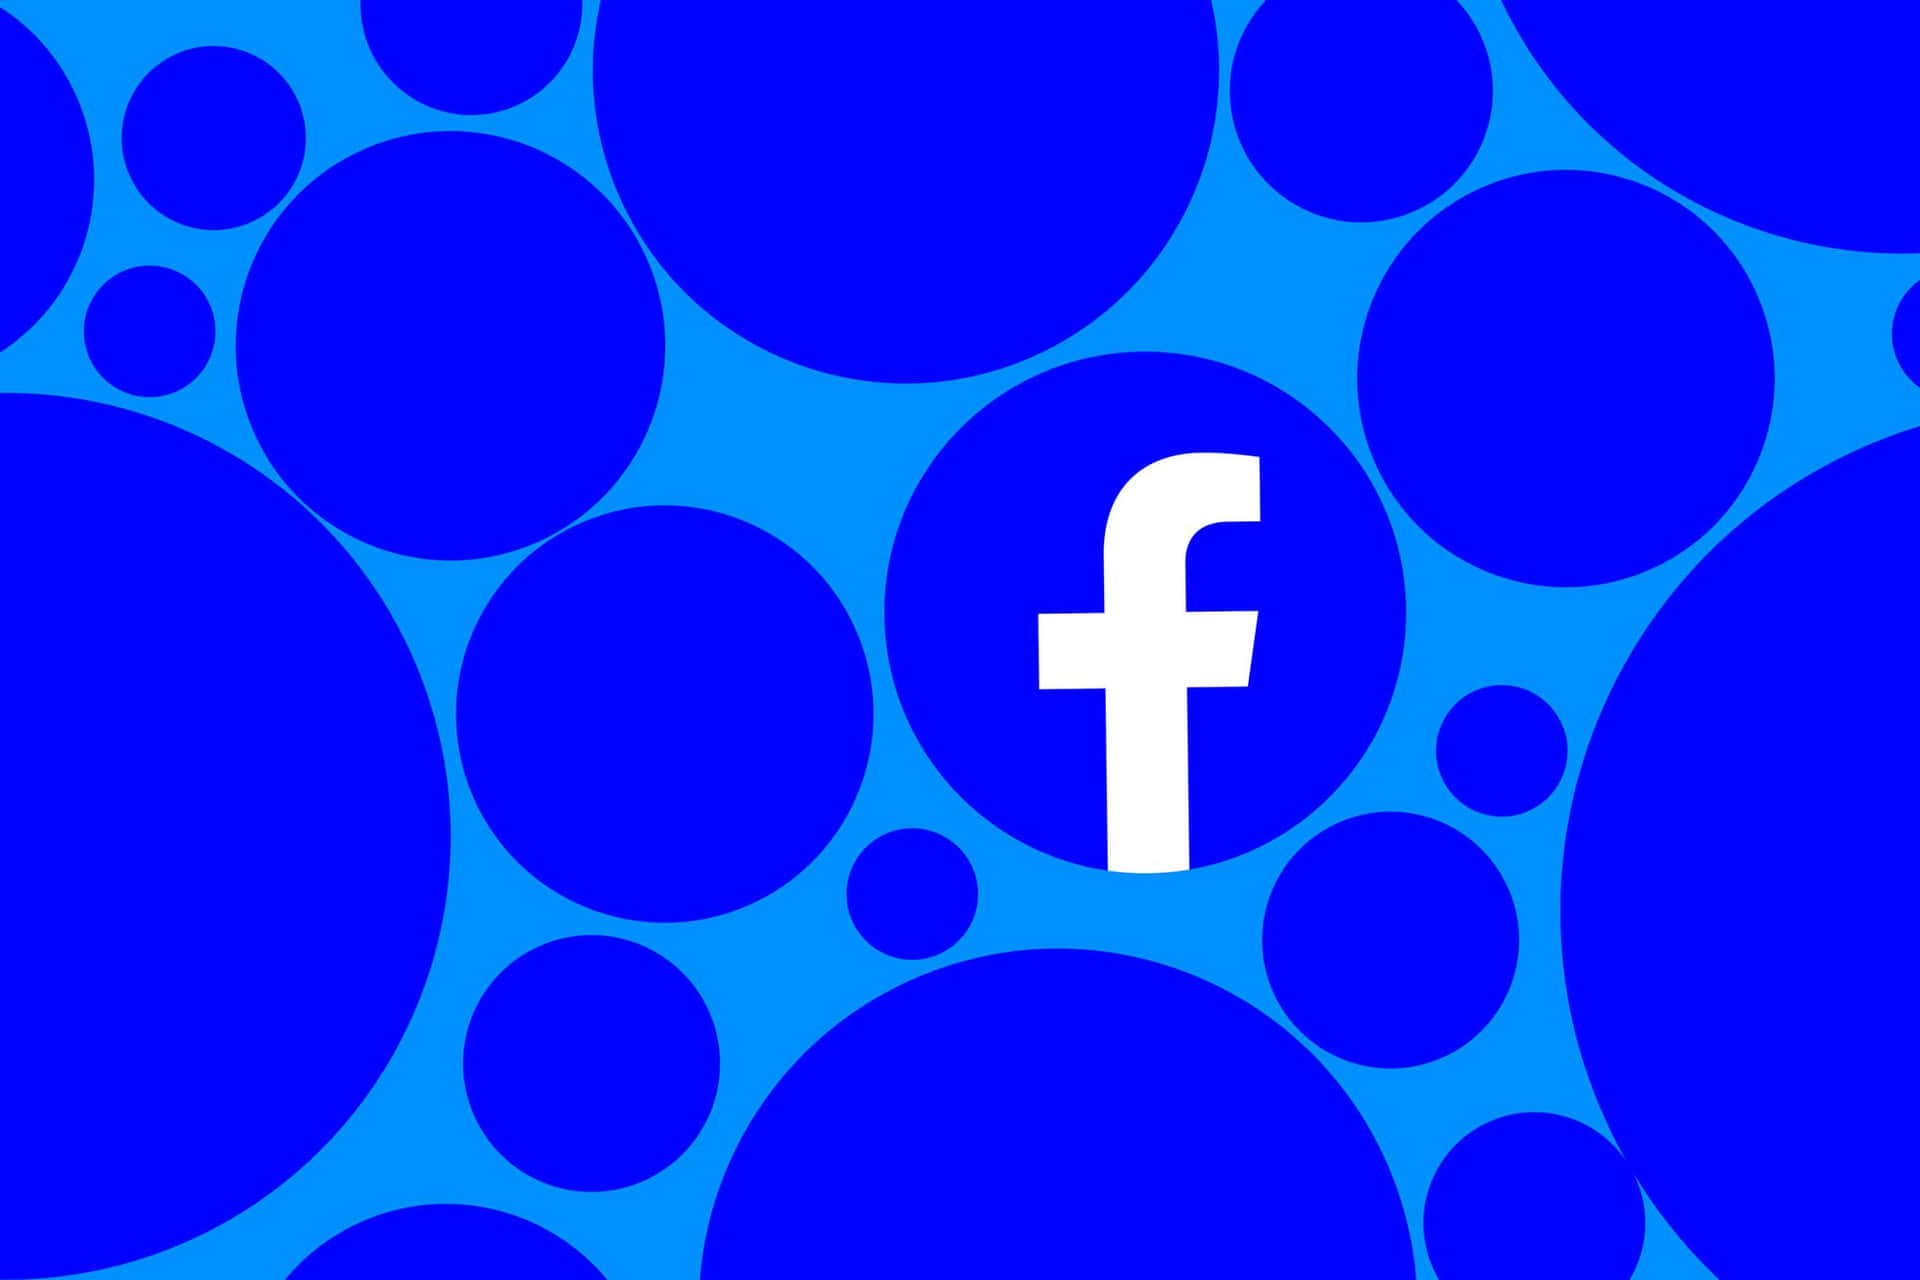 Logotipode Facebook Sobre Un Fondo Azul